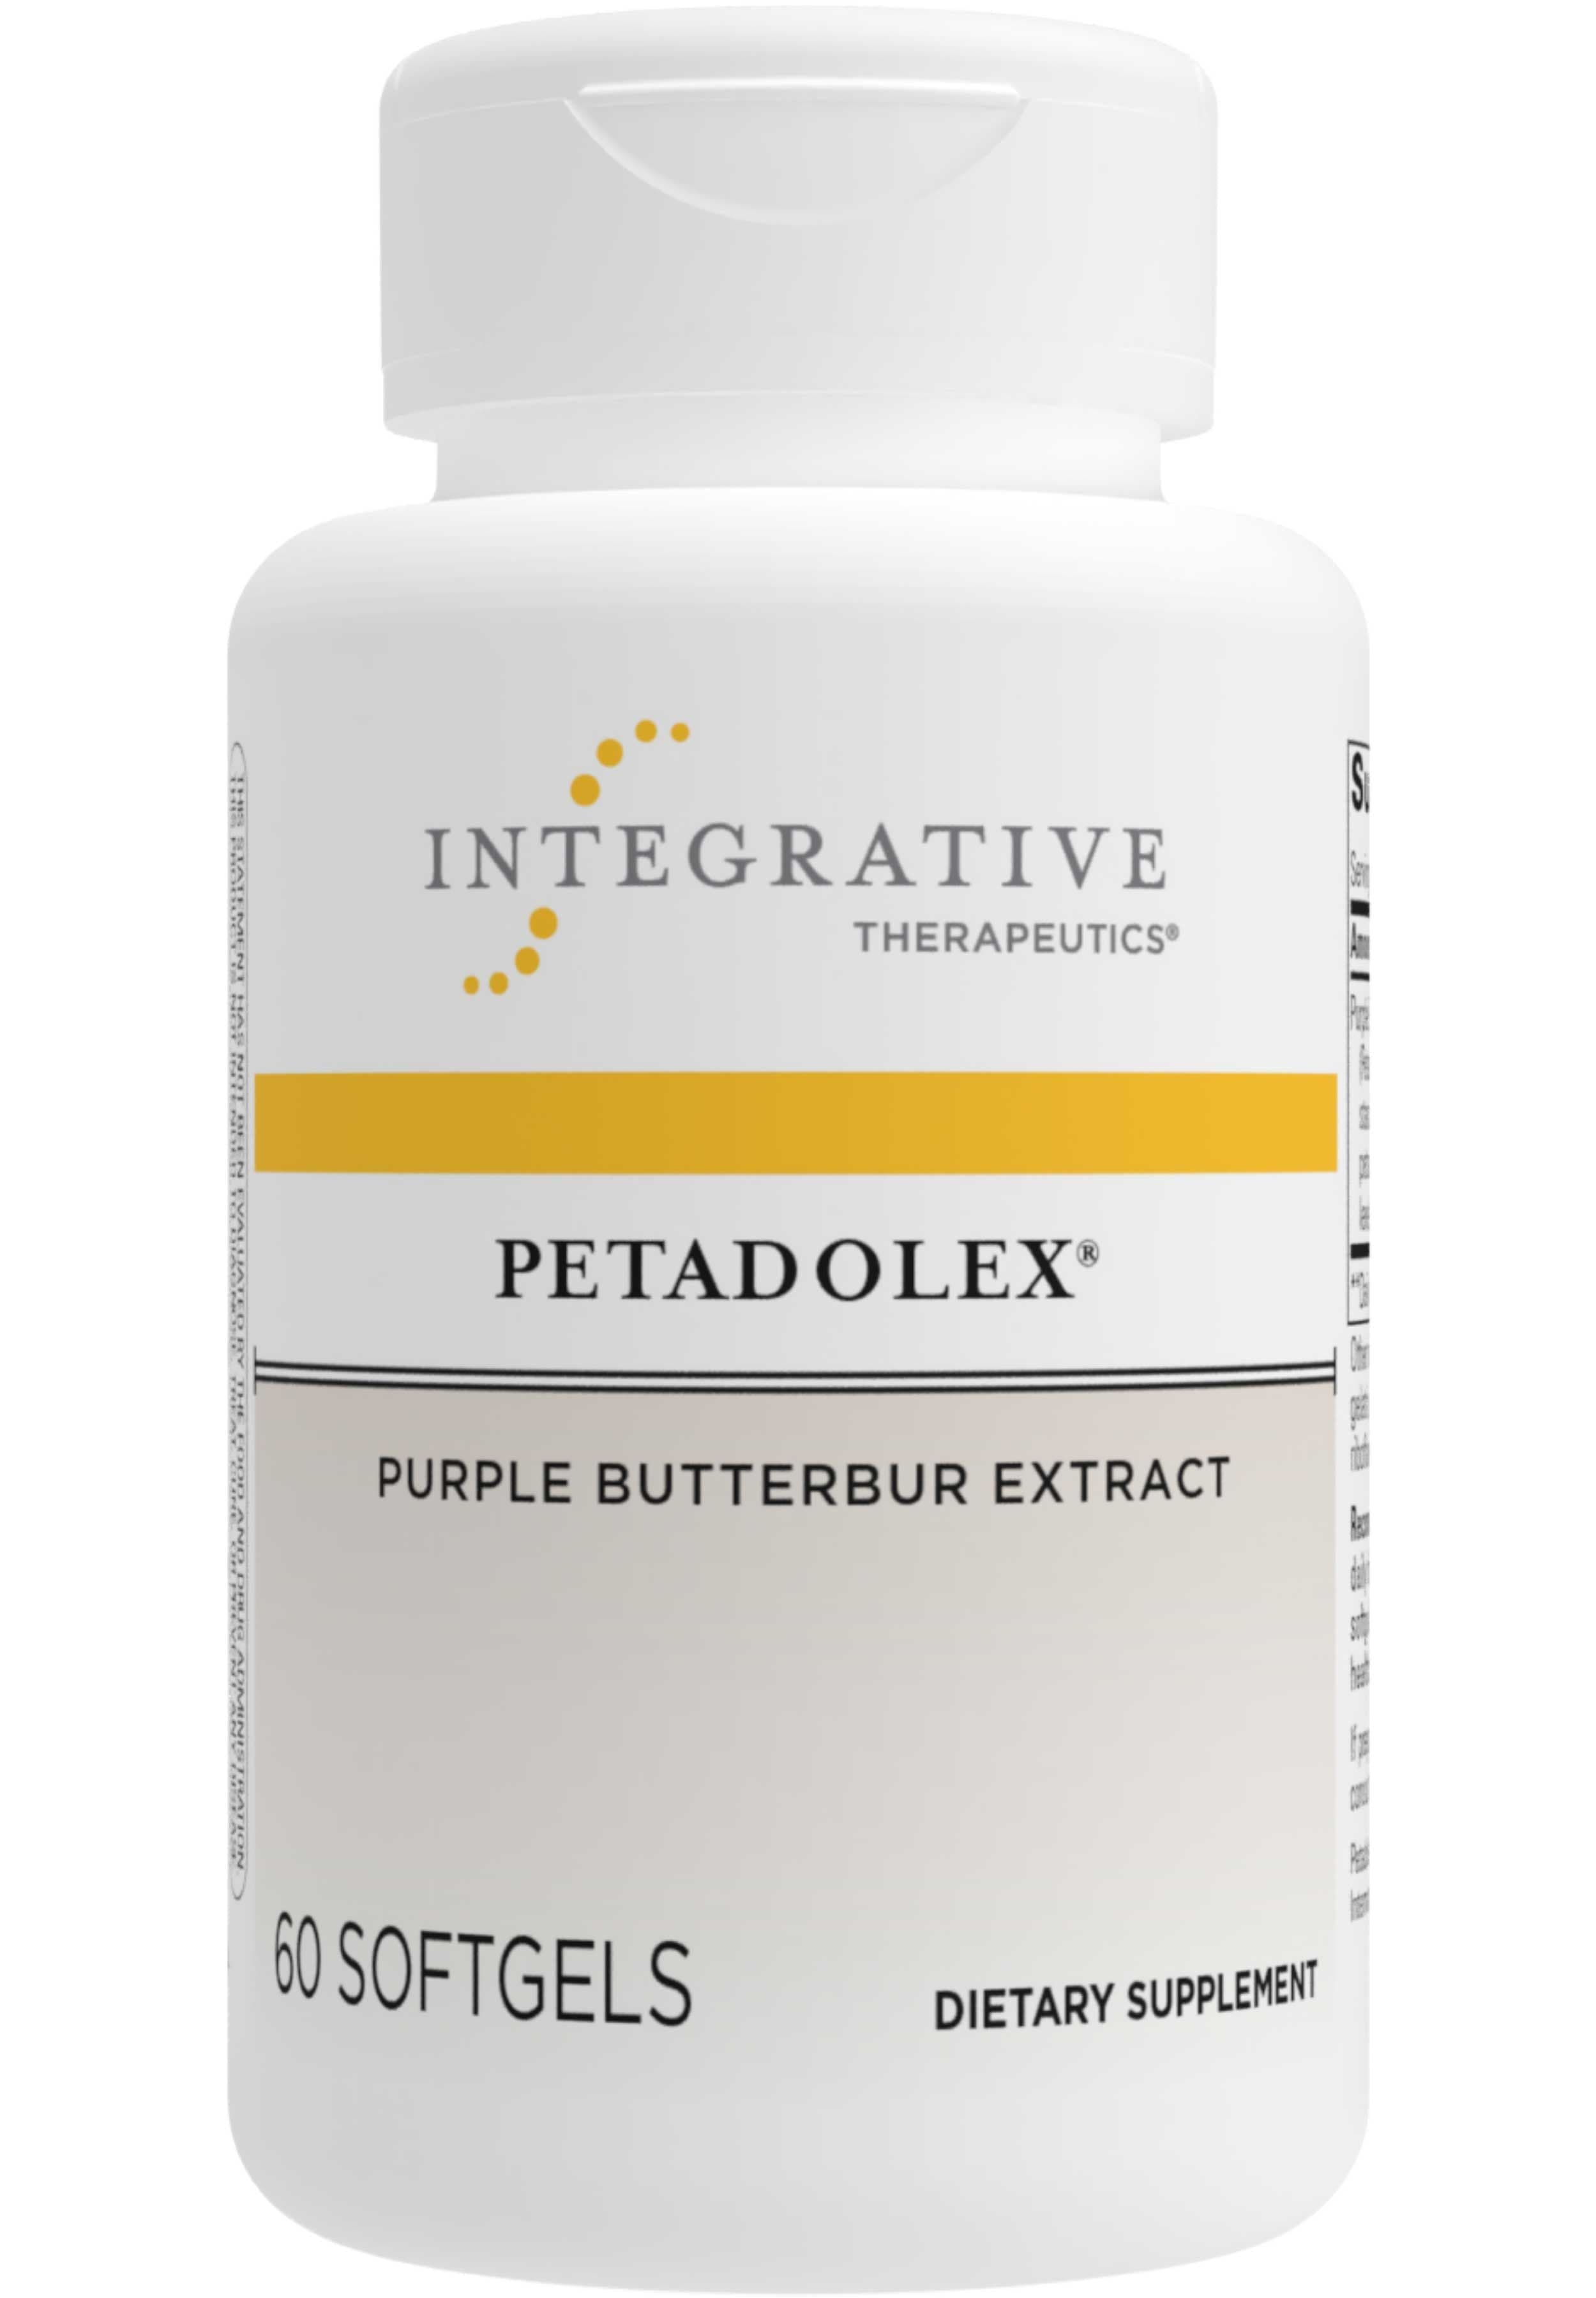 Integrative Therapeutics Petadolex